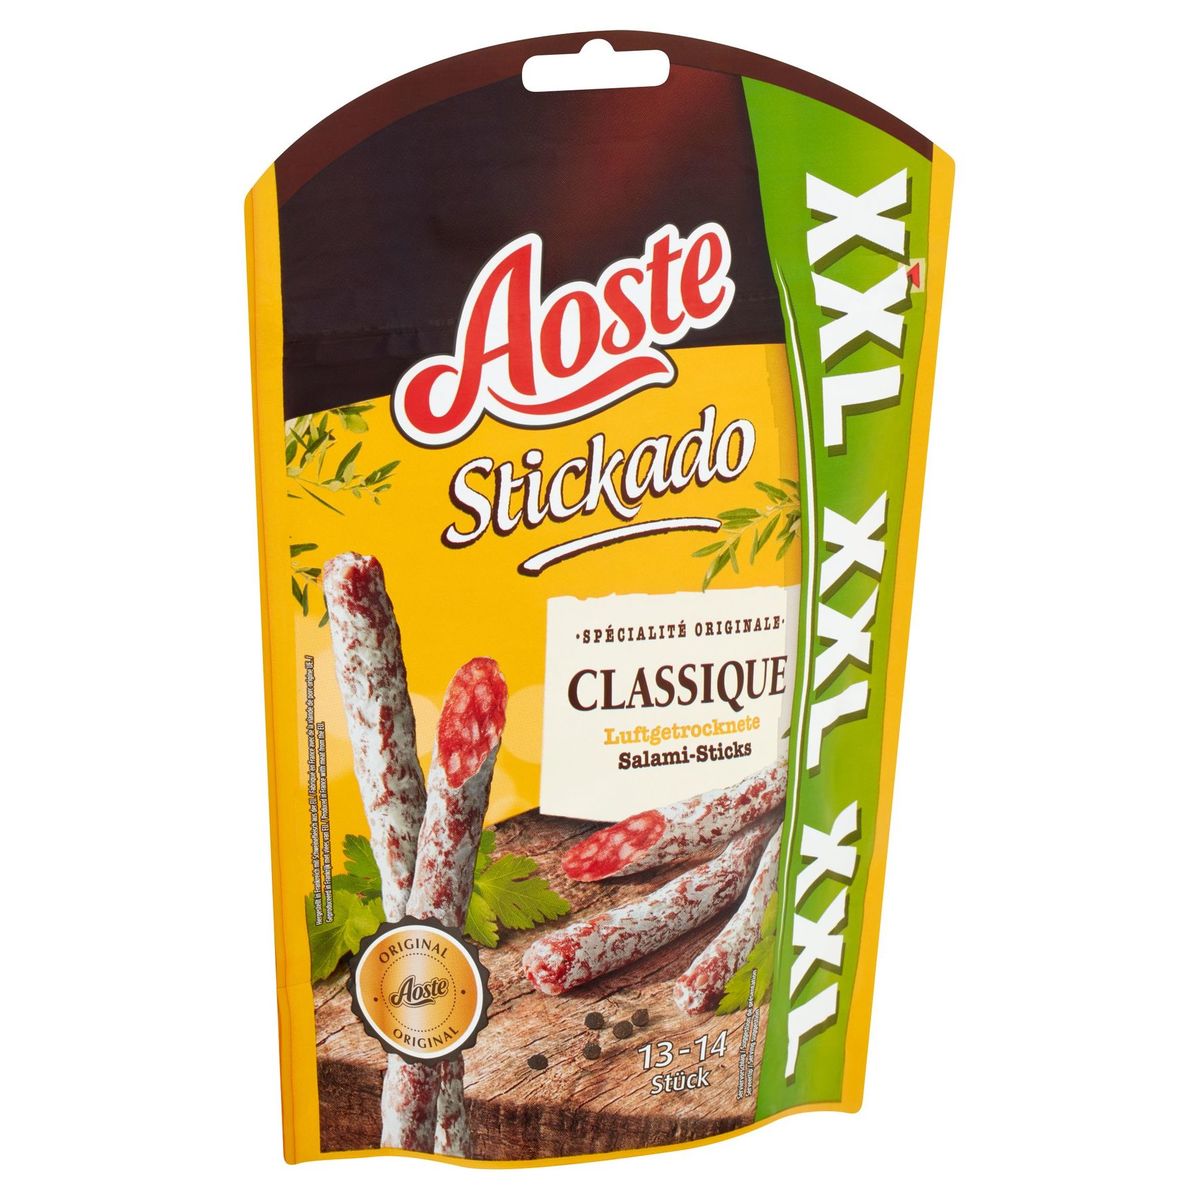 Aoste Stickado Classique Salami-Sticks XXL 140 g